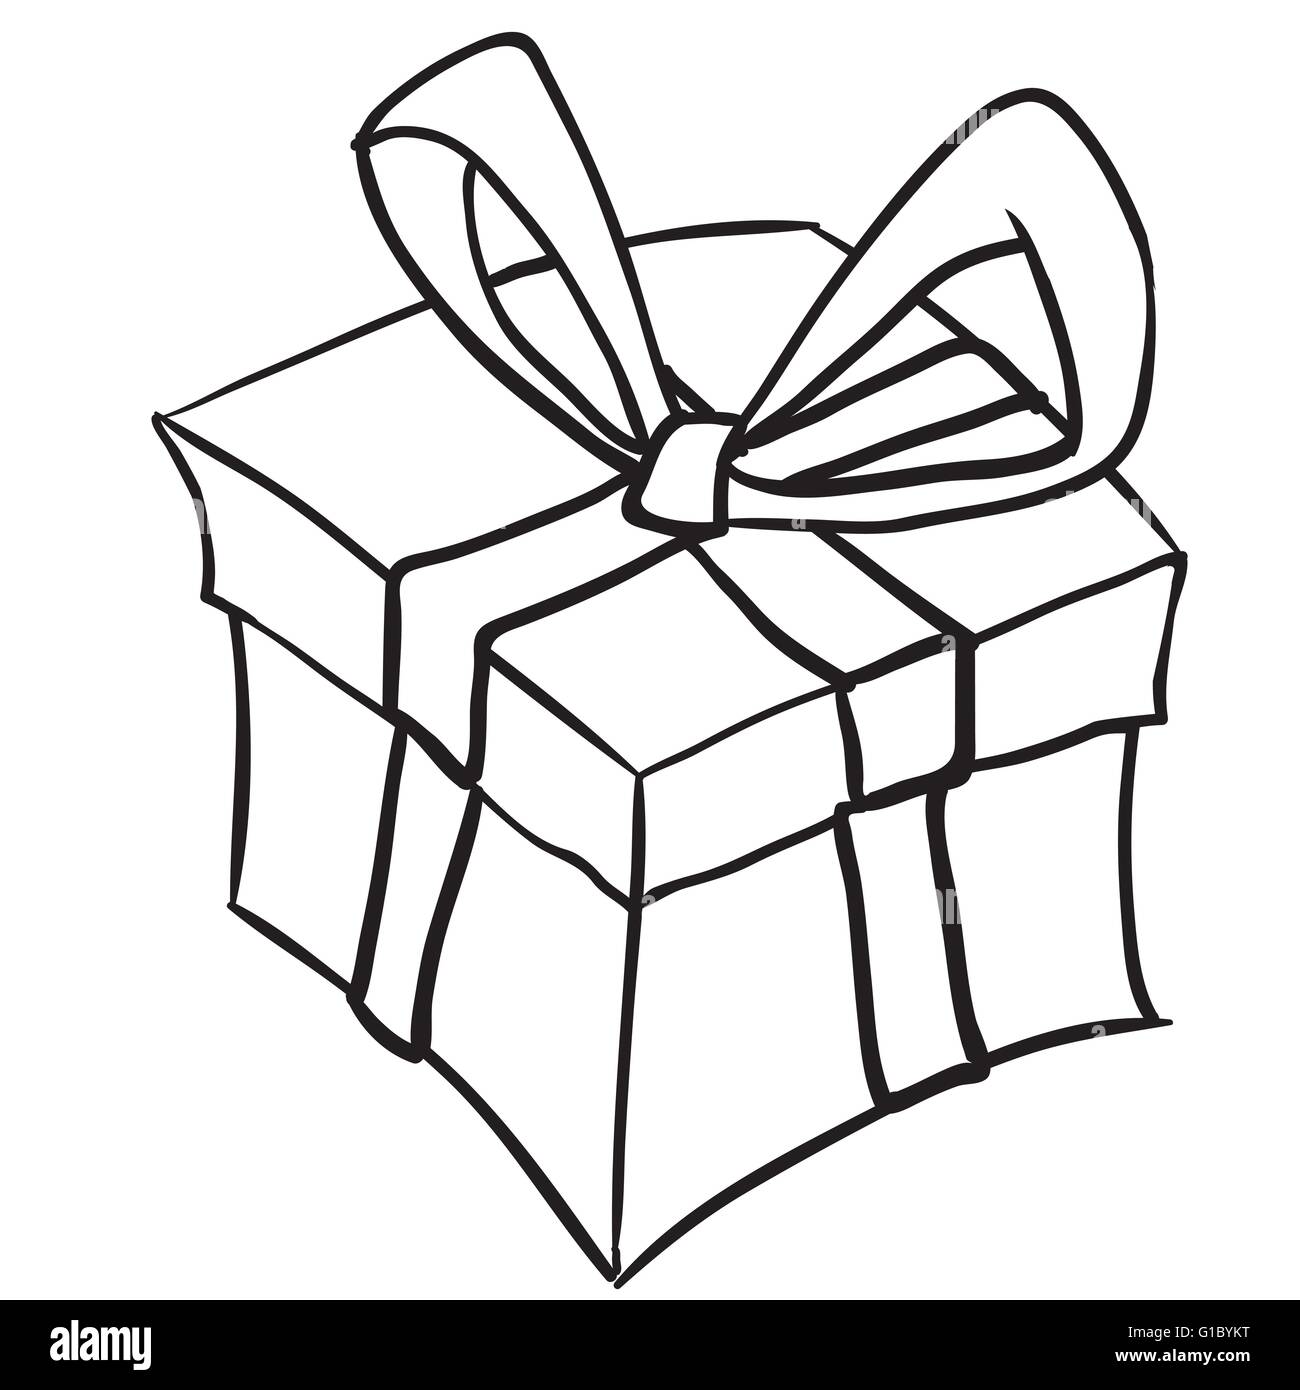 einfache Schwarz-weiß Geschenk Box Cartoon doodle Stock-Vektorgrafik - Alamy